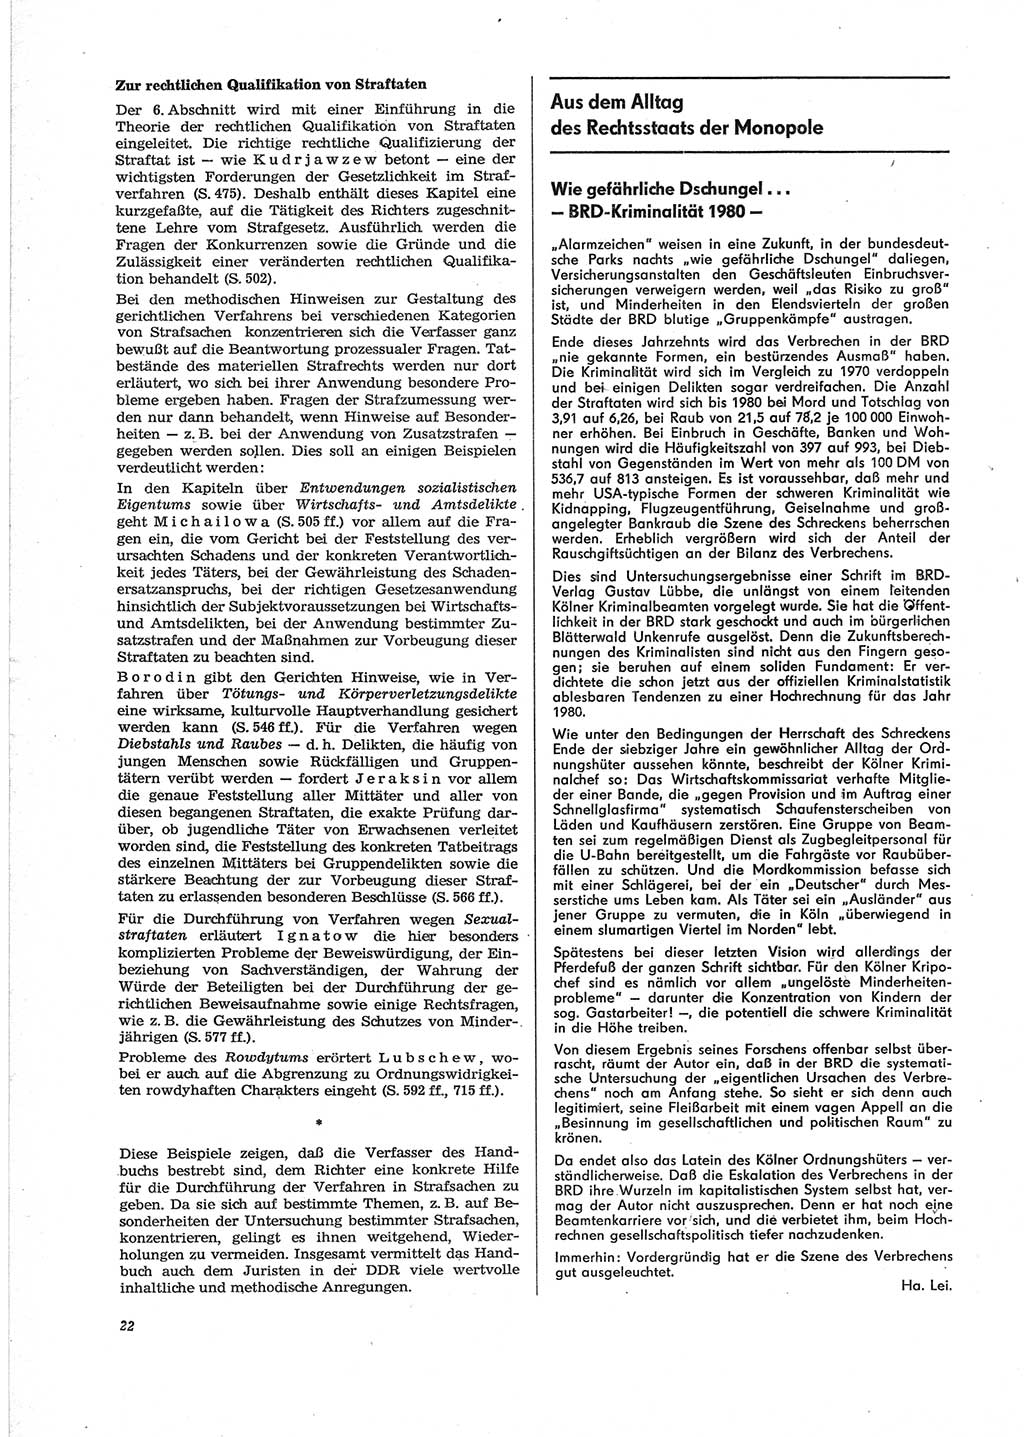 Neue Justiz (NJ), Zeitschrift für Recht und Rechtswissenschaft [Deutsche Demokratische Republik (DDR)], 28. Jahrgang 1974, Seite 22 (NJ DDR 1974, S. 22)